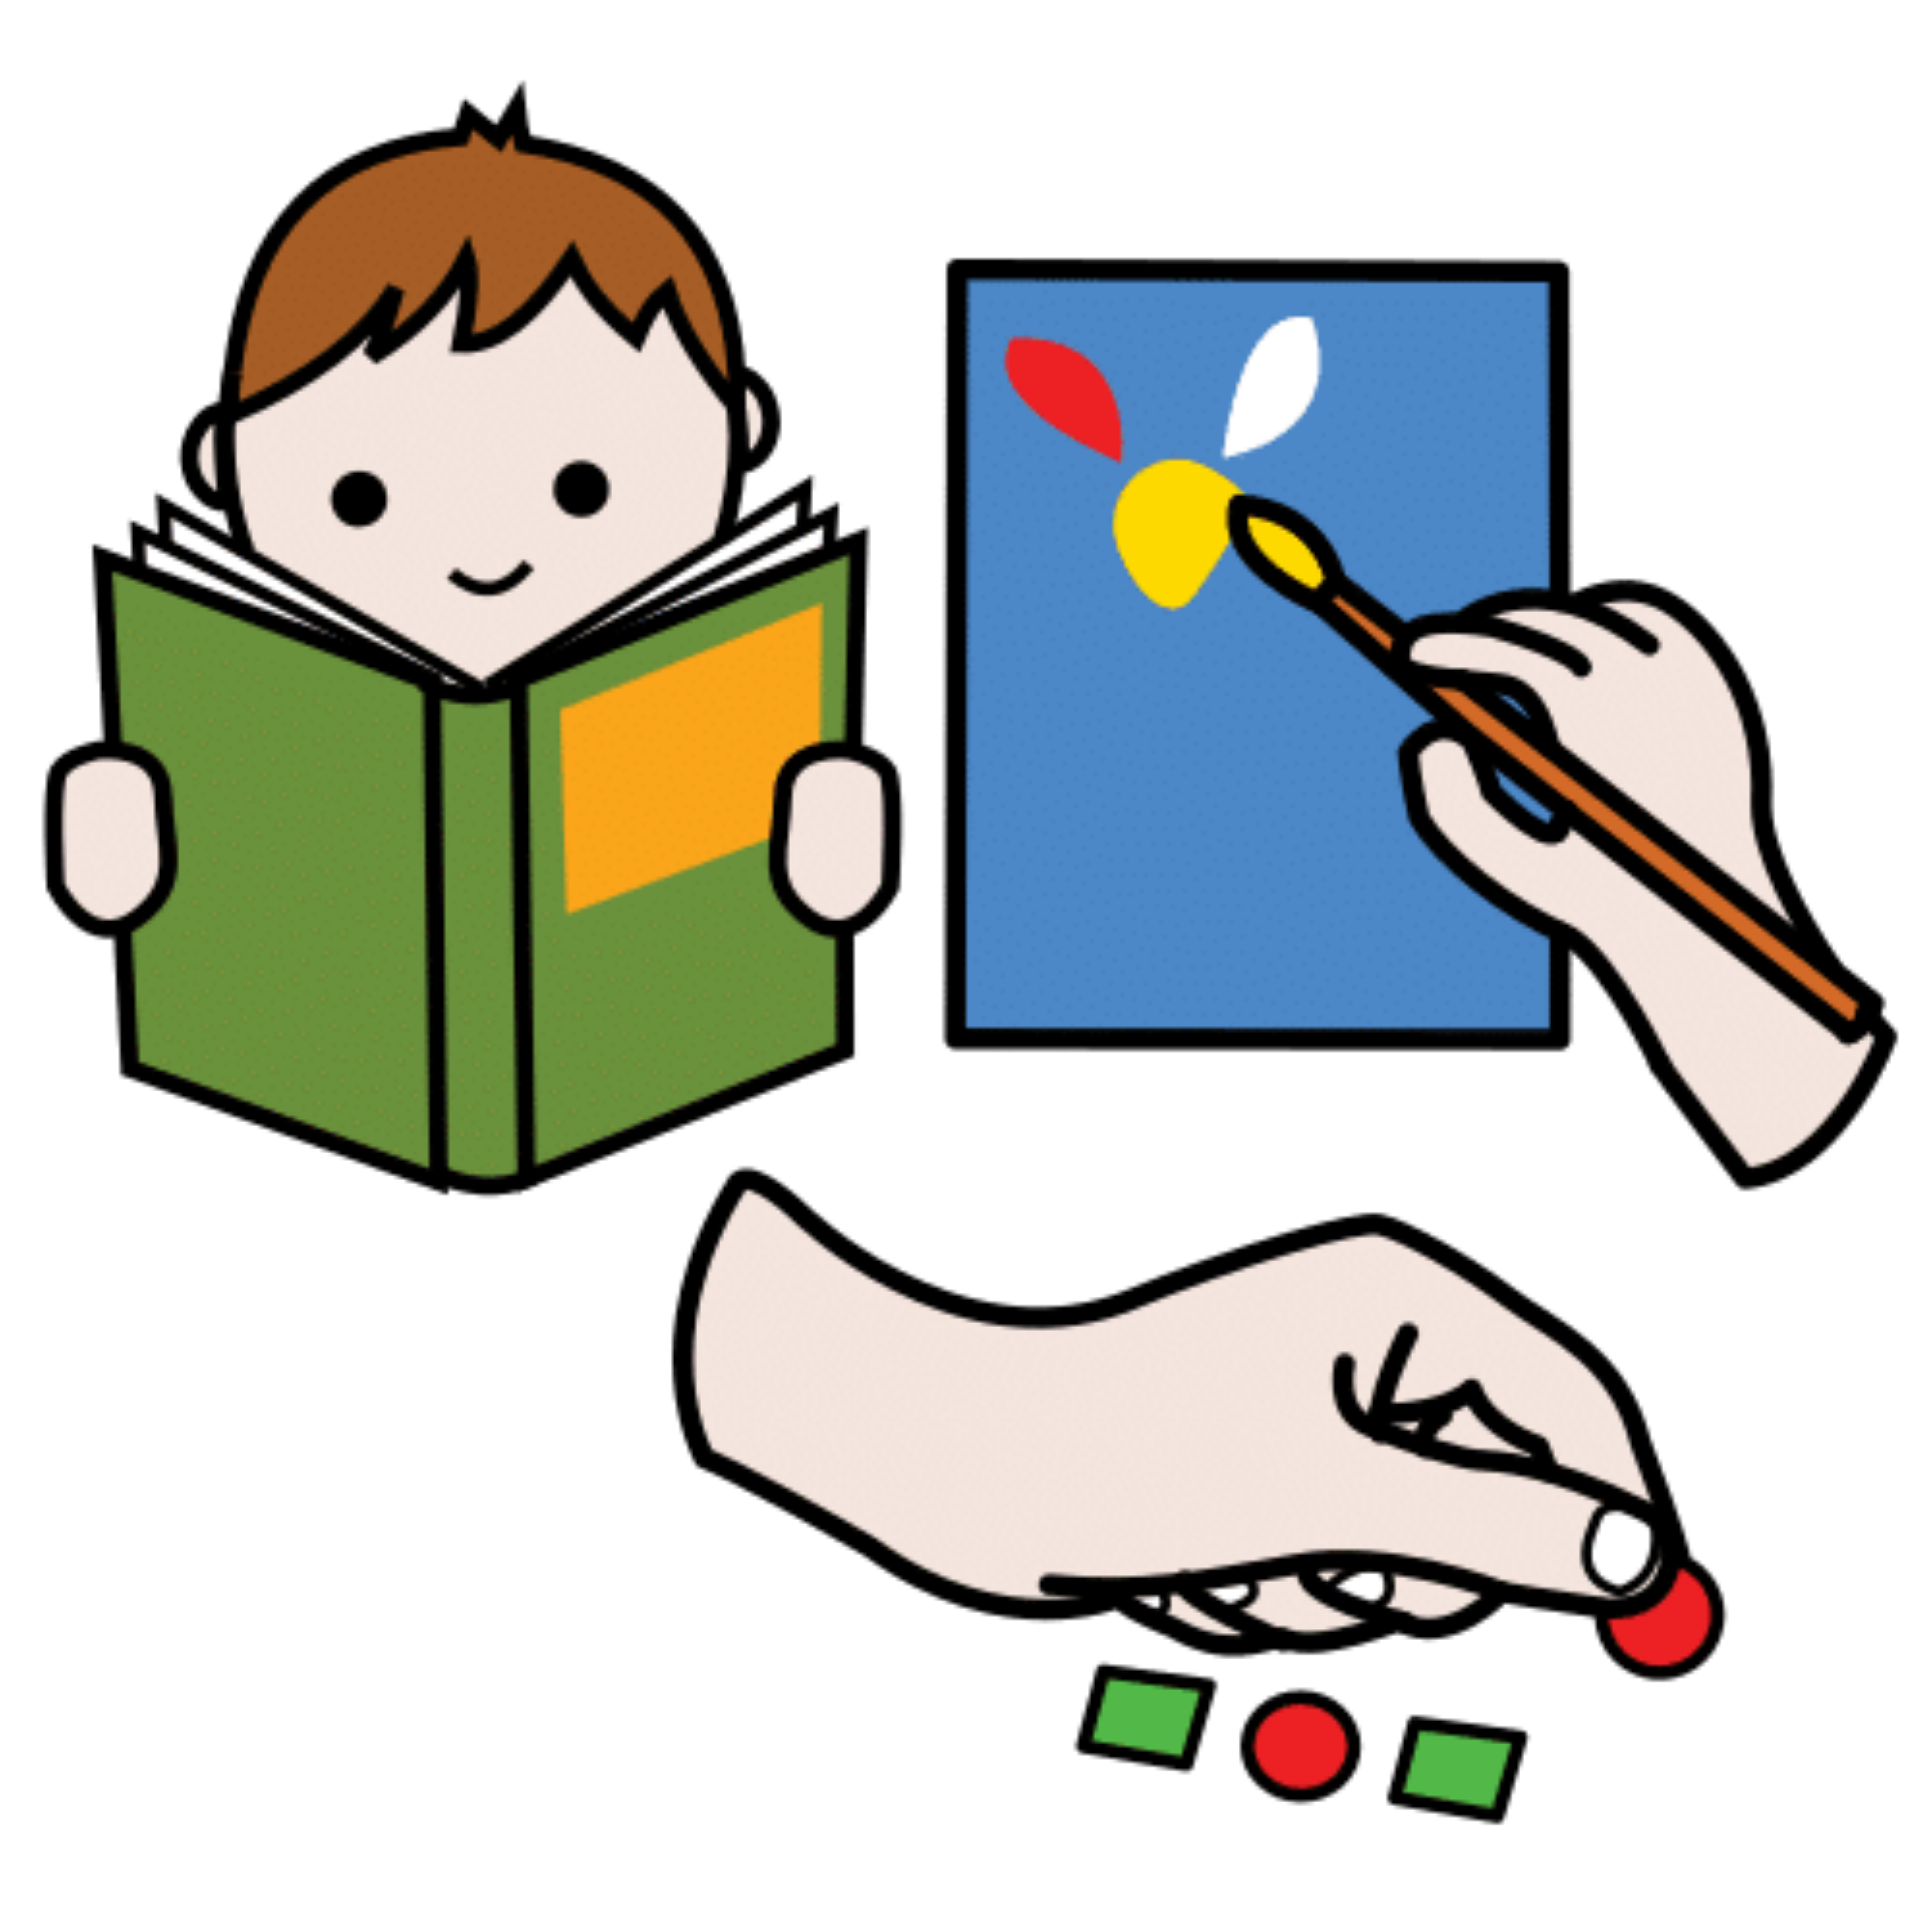 La imagen muestra tres dibujos. Un niño leyendo, una mano pegando unas figuras geométricas, y un pincel sobre un cuadro.